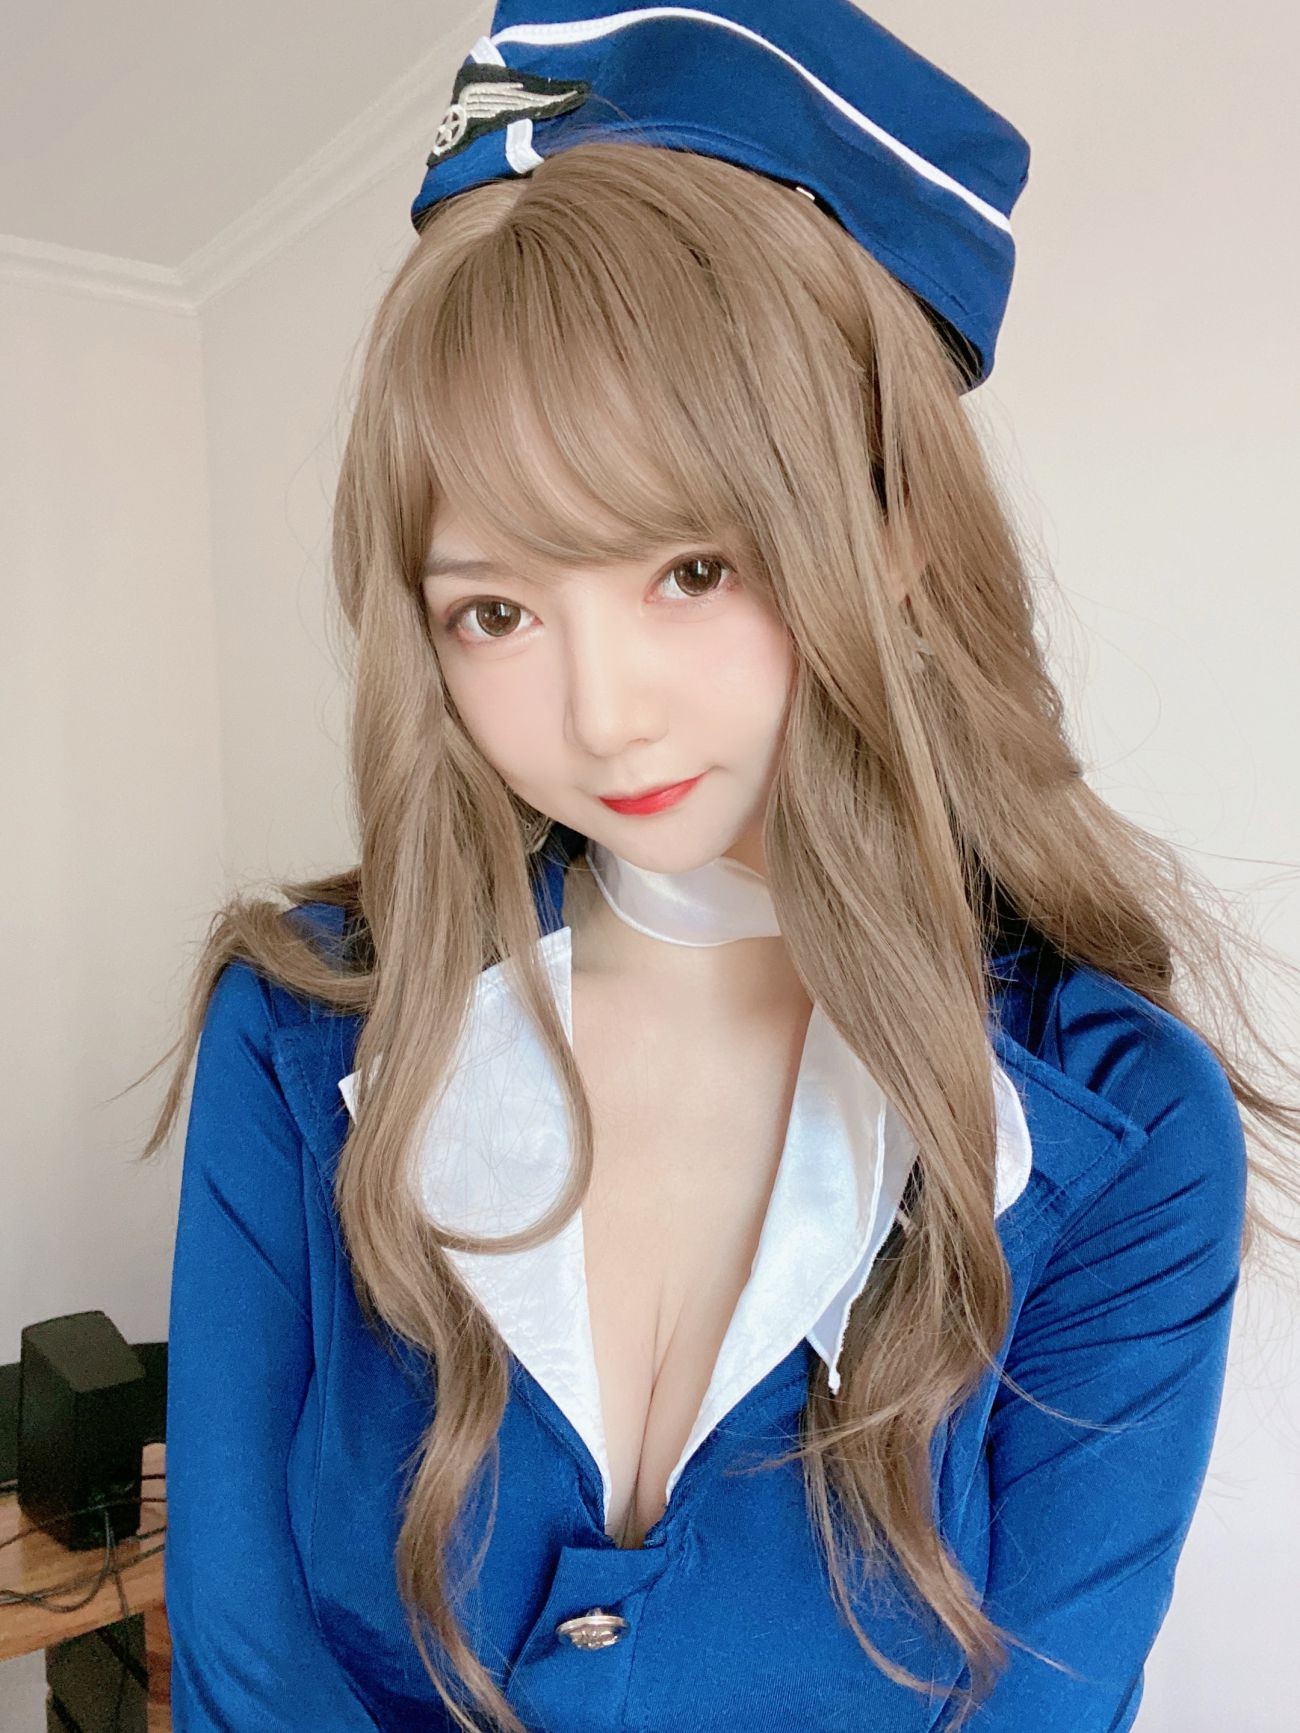 微博美少女51酱性感写真蓝色制服装 (29)